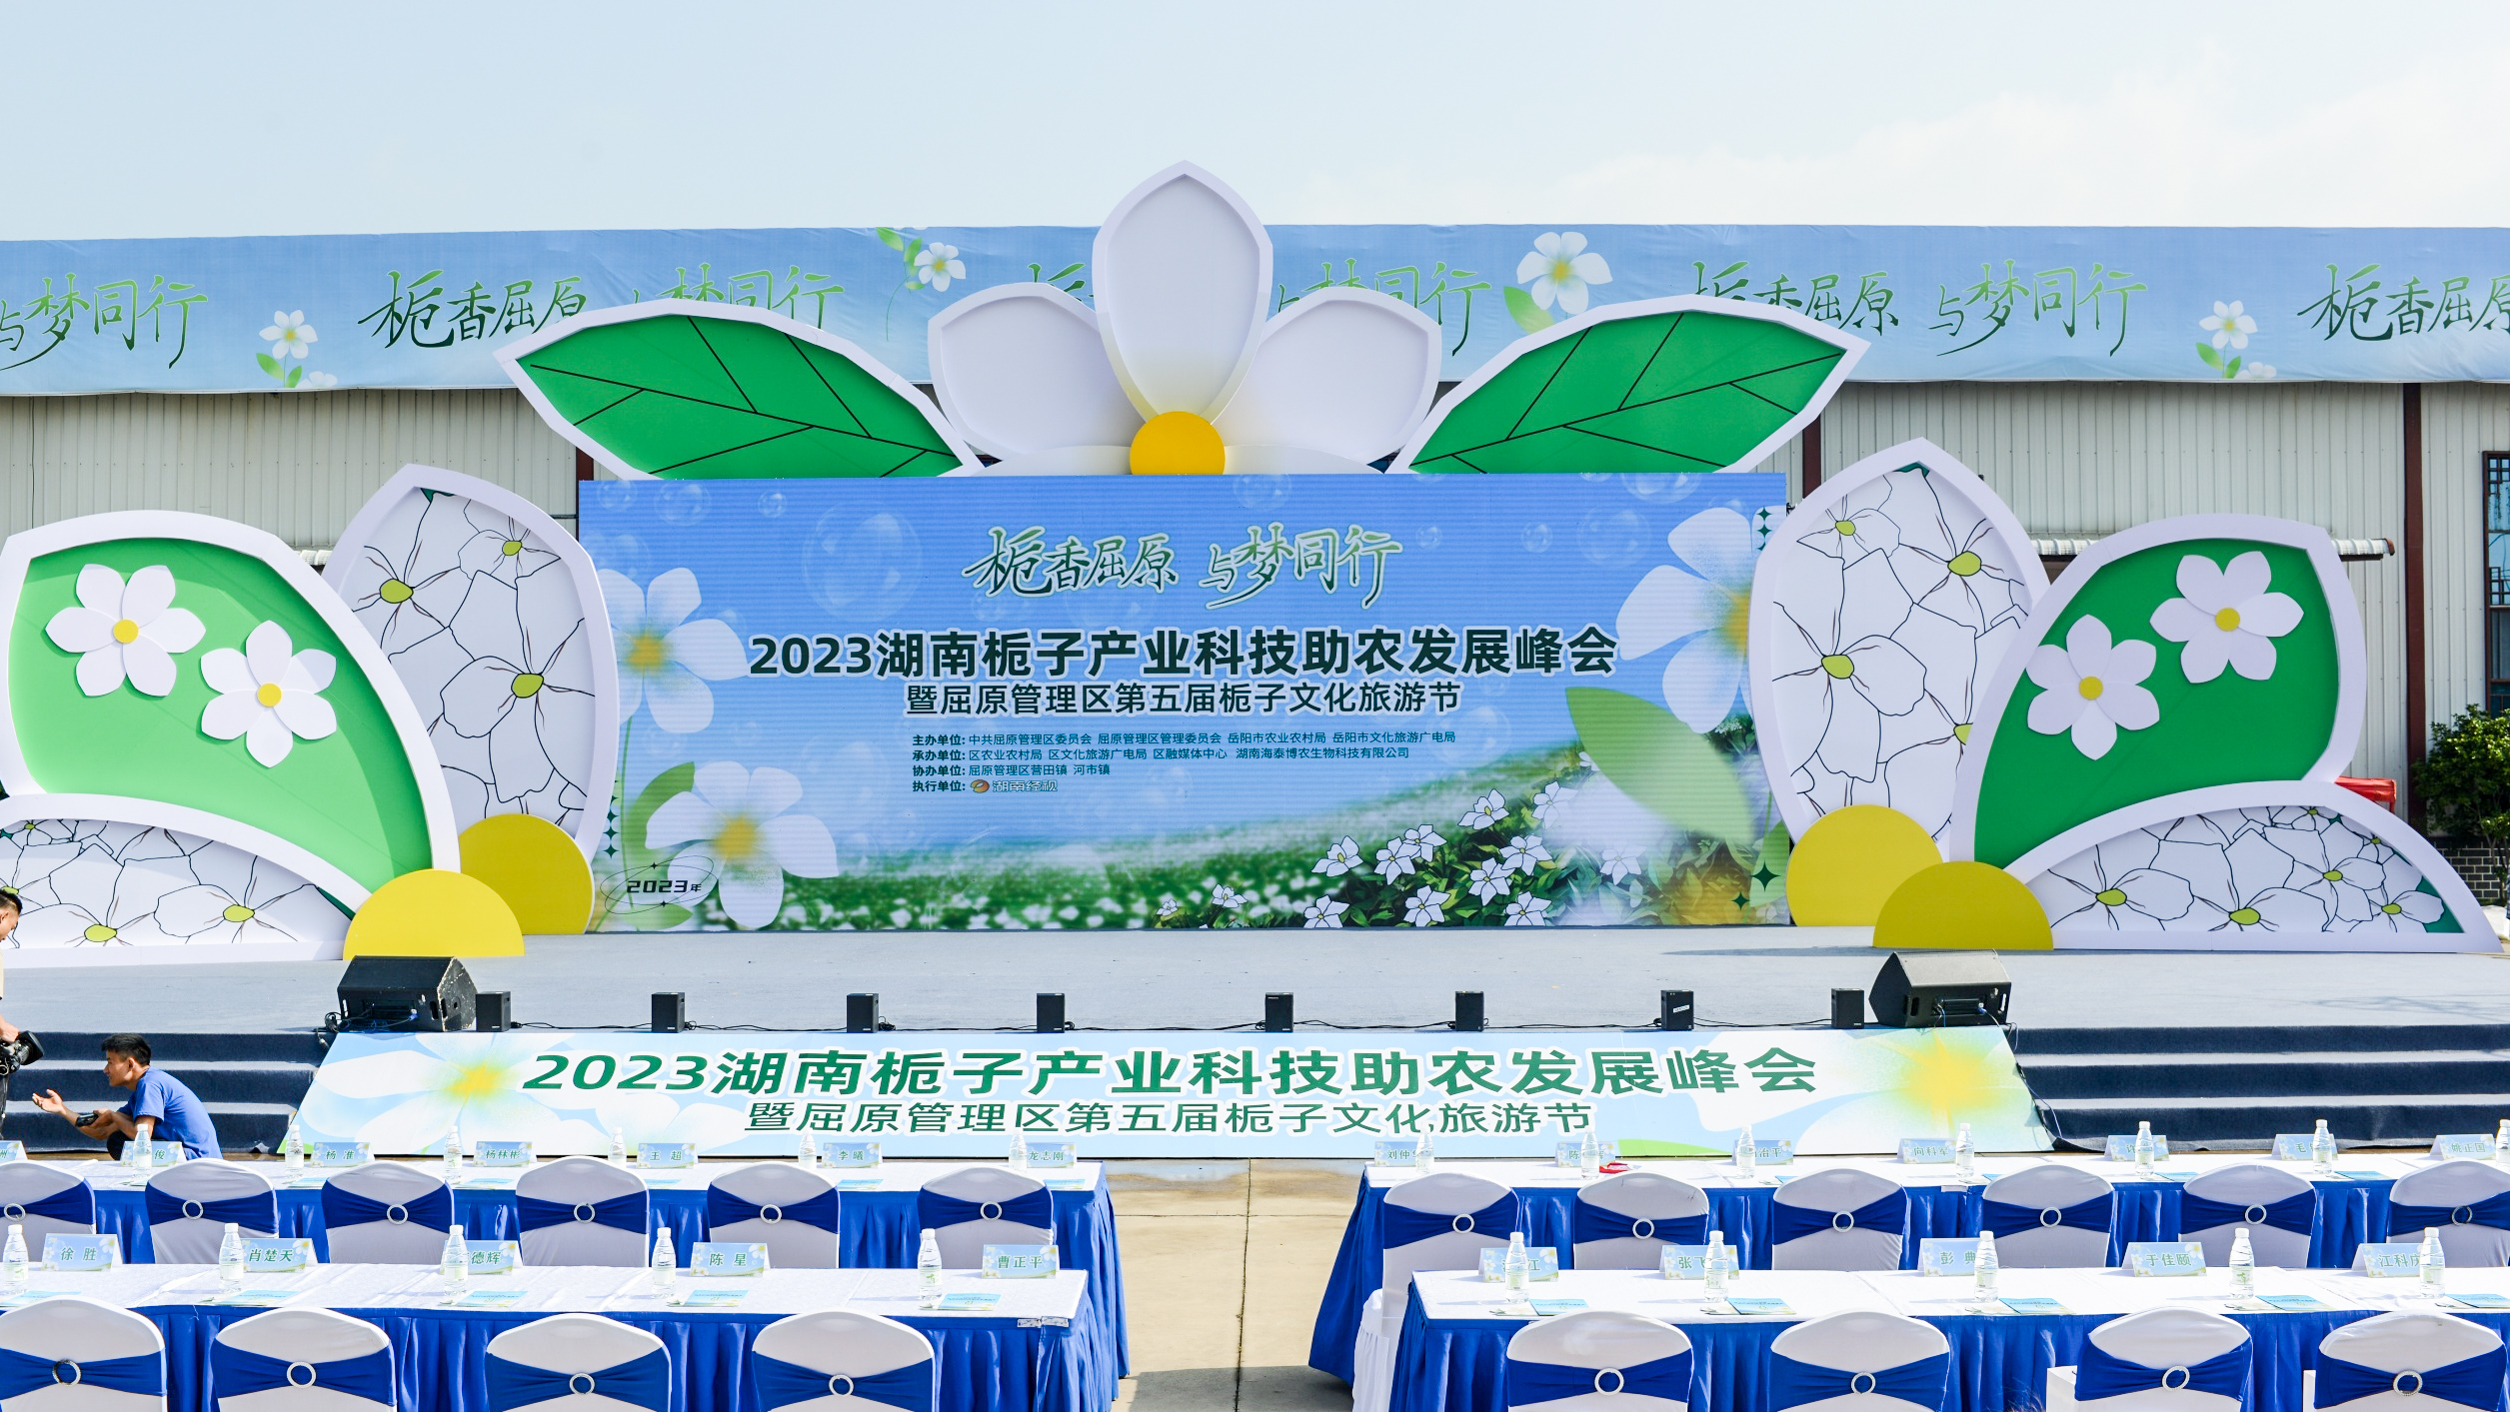 XKA再次受邀参加2023岳阳屈原管理区栀子文化旅游节，助力乡村振兴